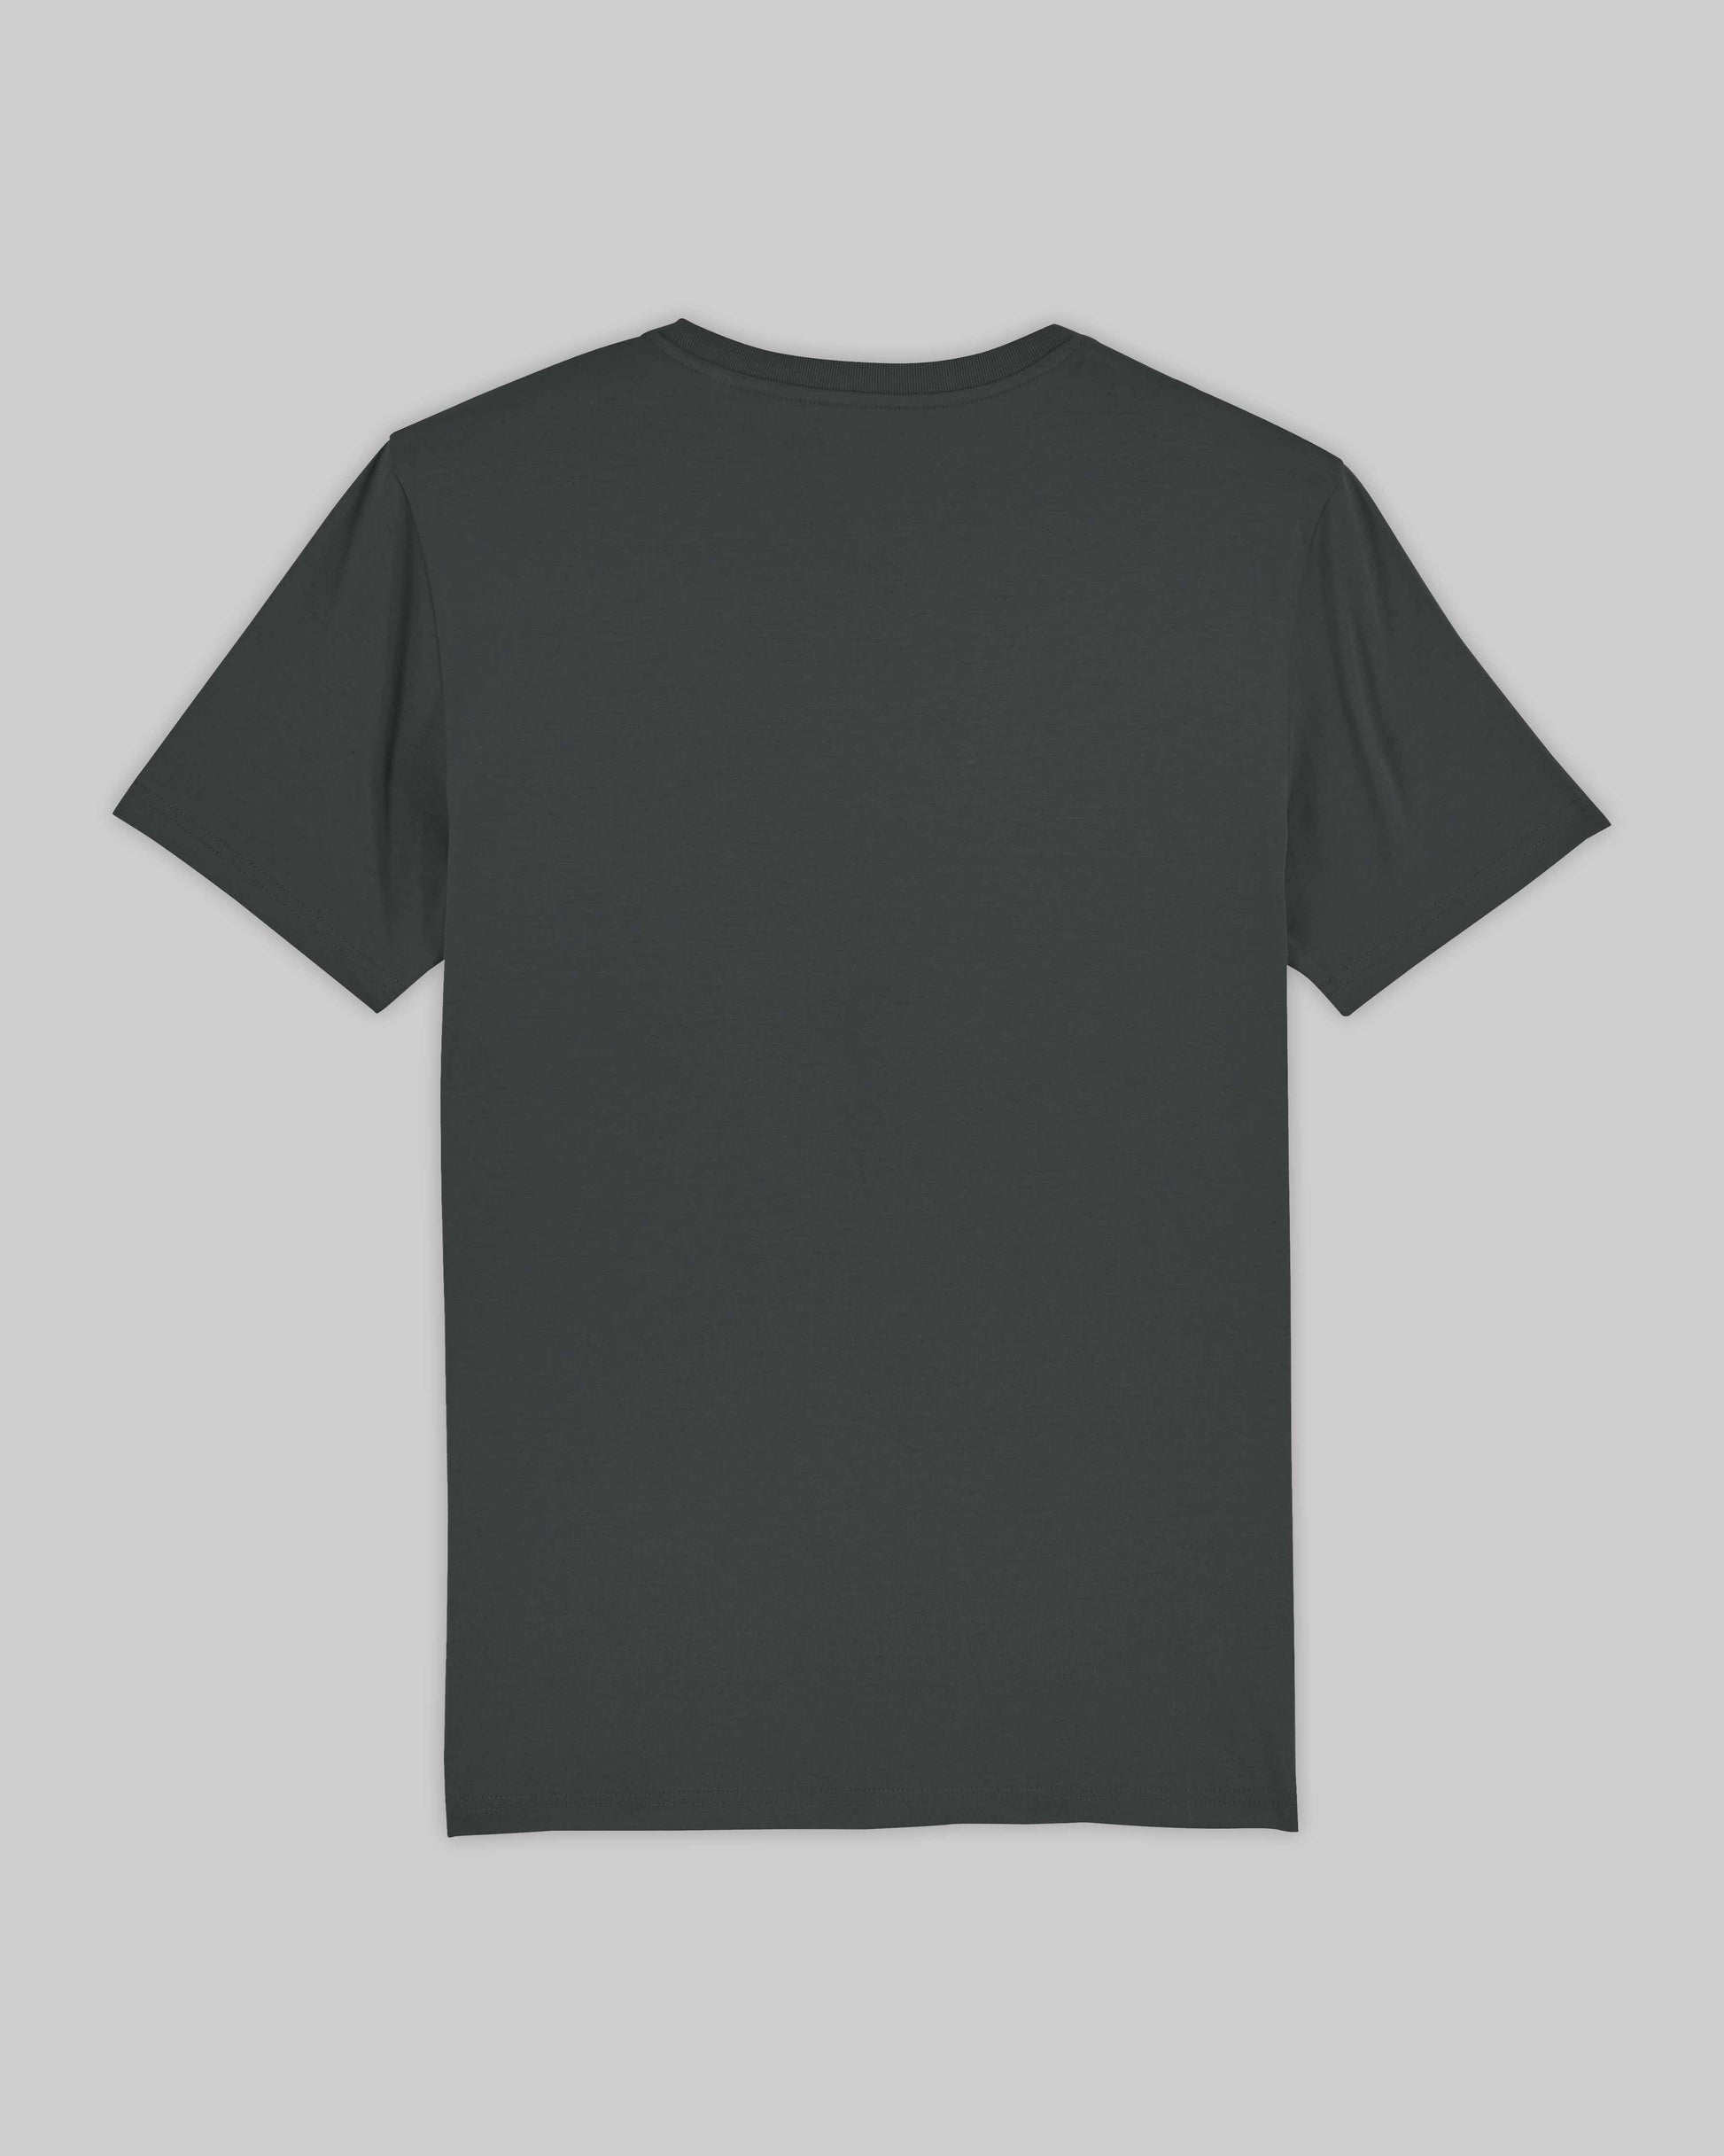 EINHORST® unisex Organic Shirt in "Anthracite" mit dem Motiv "pride Regenbogen" in der Kombination schwarzer Regenbogen mit schwarzer Schrift, Bild von Shirt von hinten